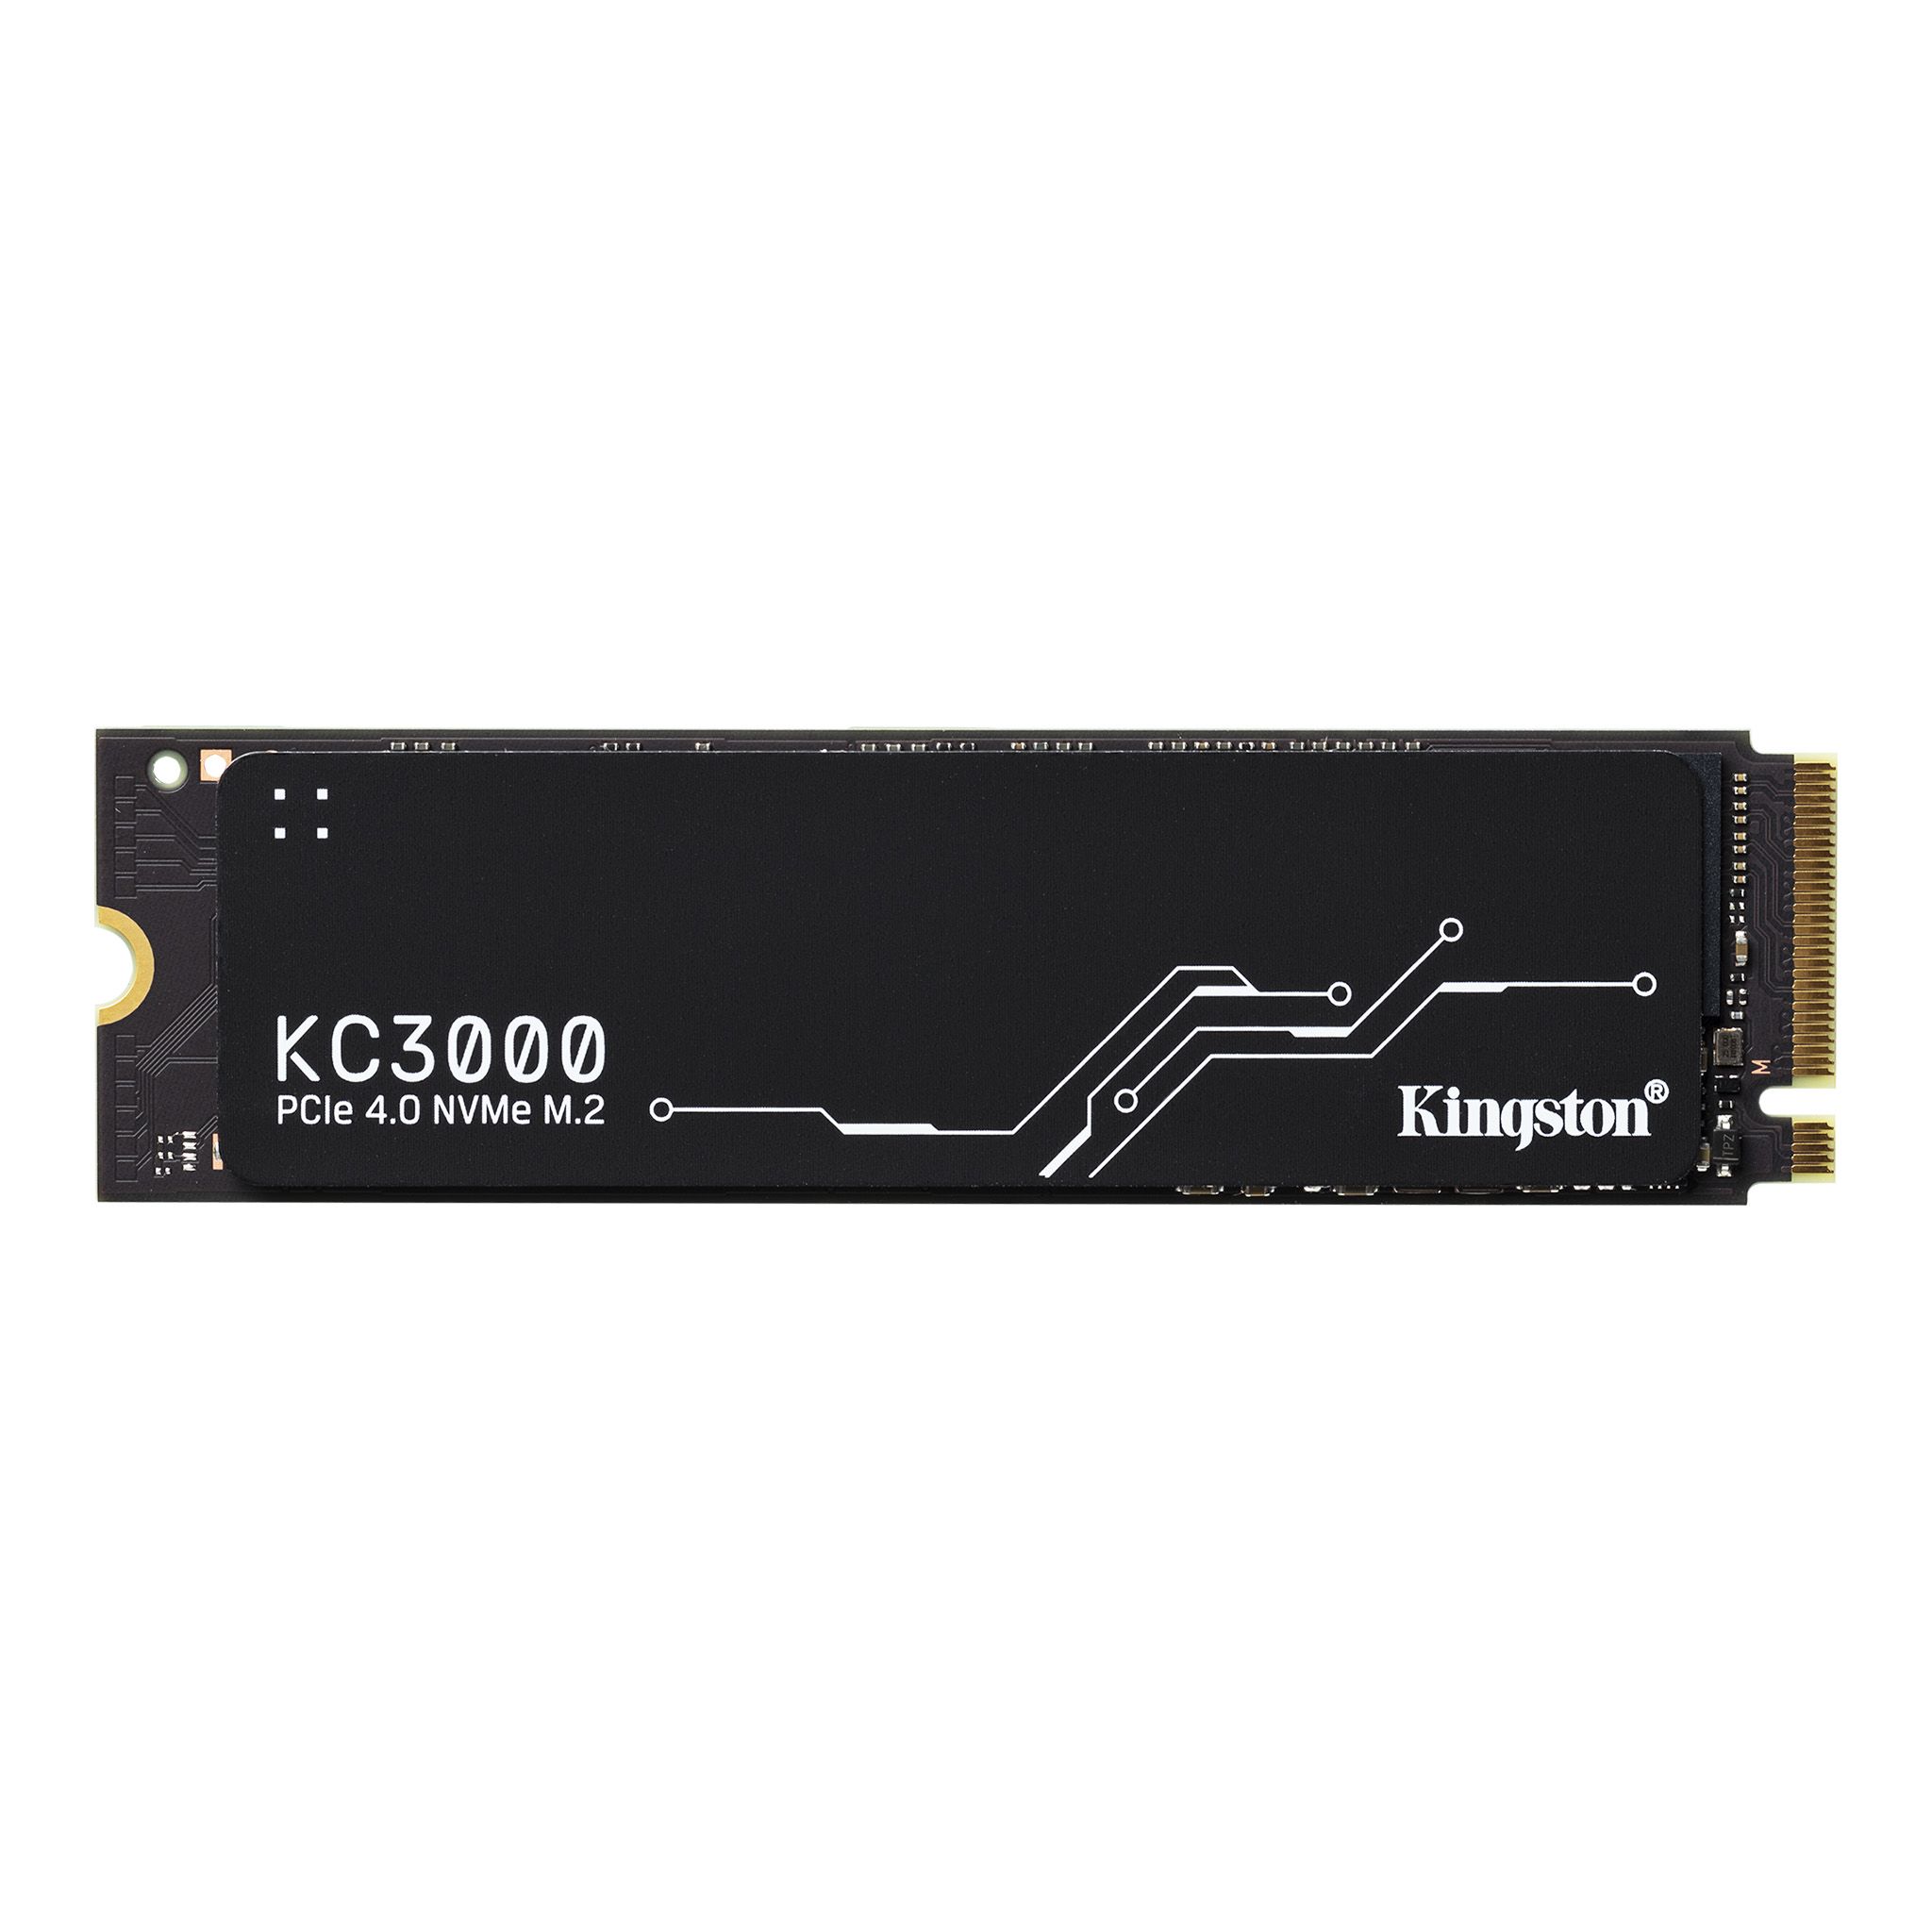 KINGSTON KC3000 1TB M.2 2280 NVME INTERNAL SSD - SKC3000S/1024G